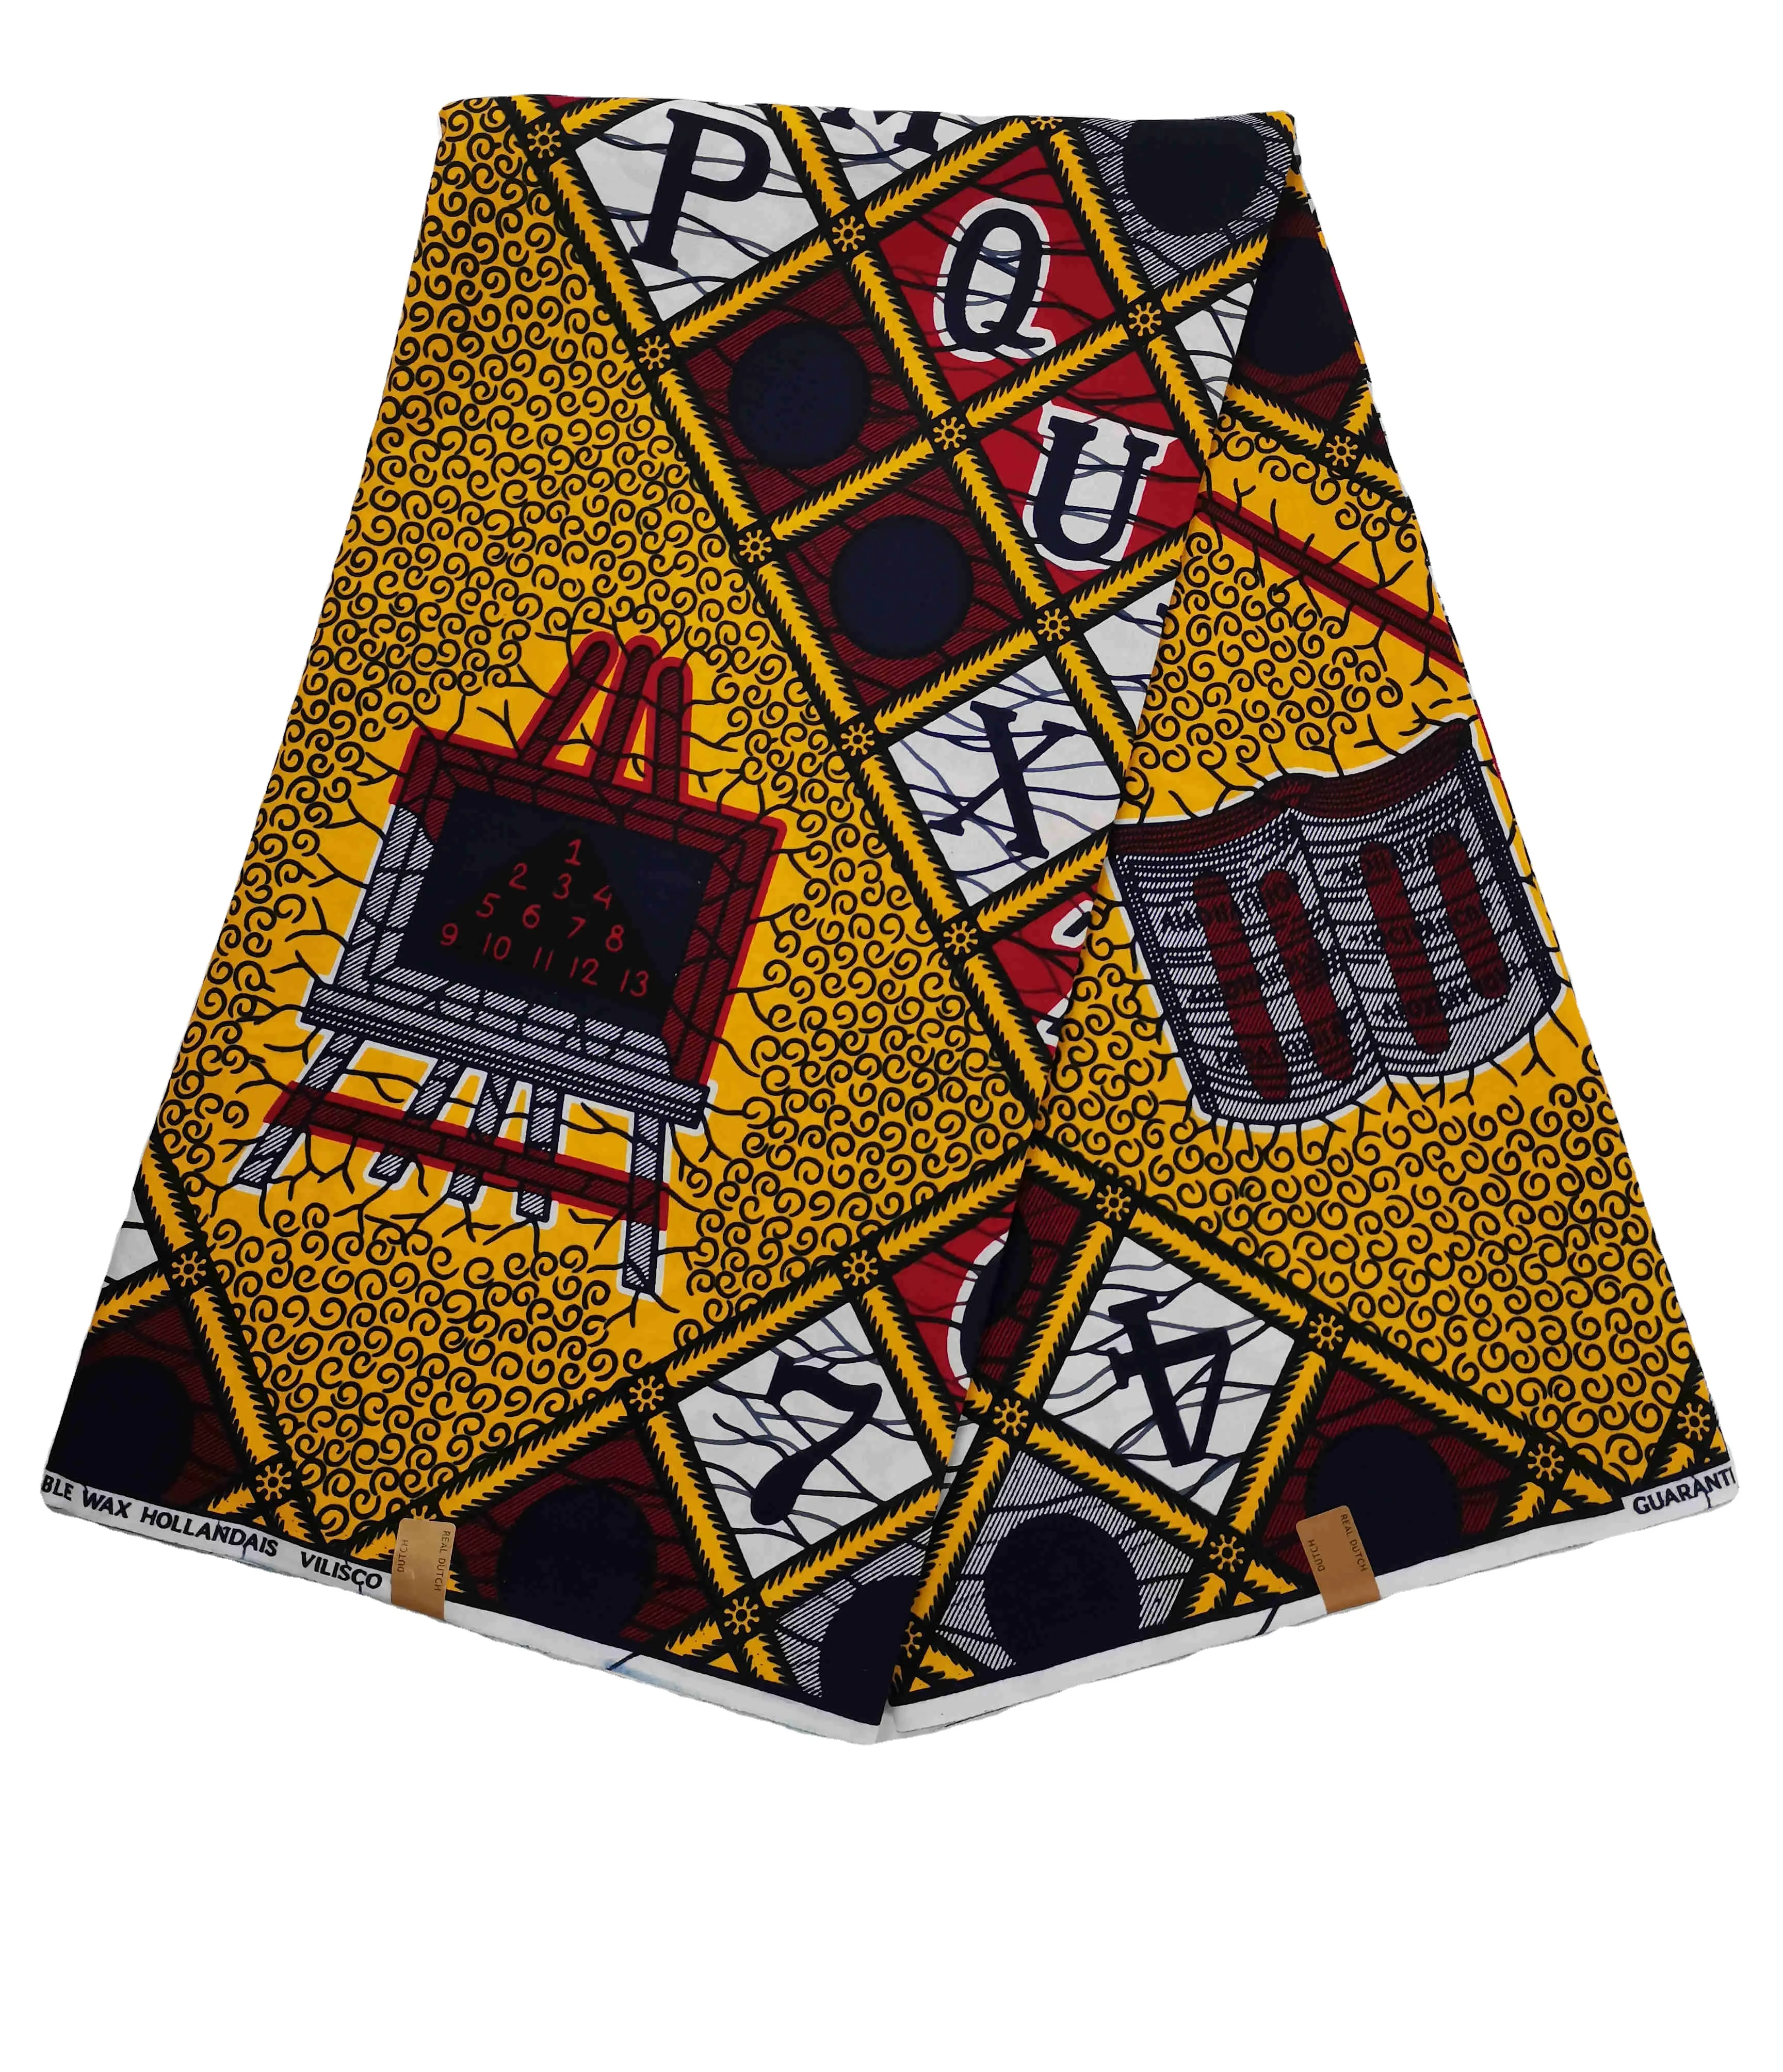 Hollandis-tela de Ankara Adoratex, tejido 100% de algodón, 6 yardas, diseño de impresión textil africano para ropa nigeriana